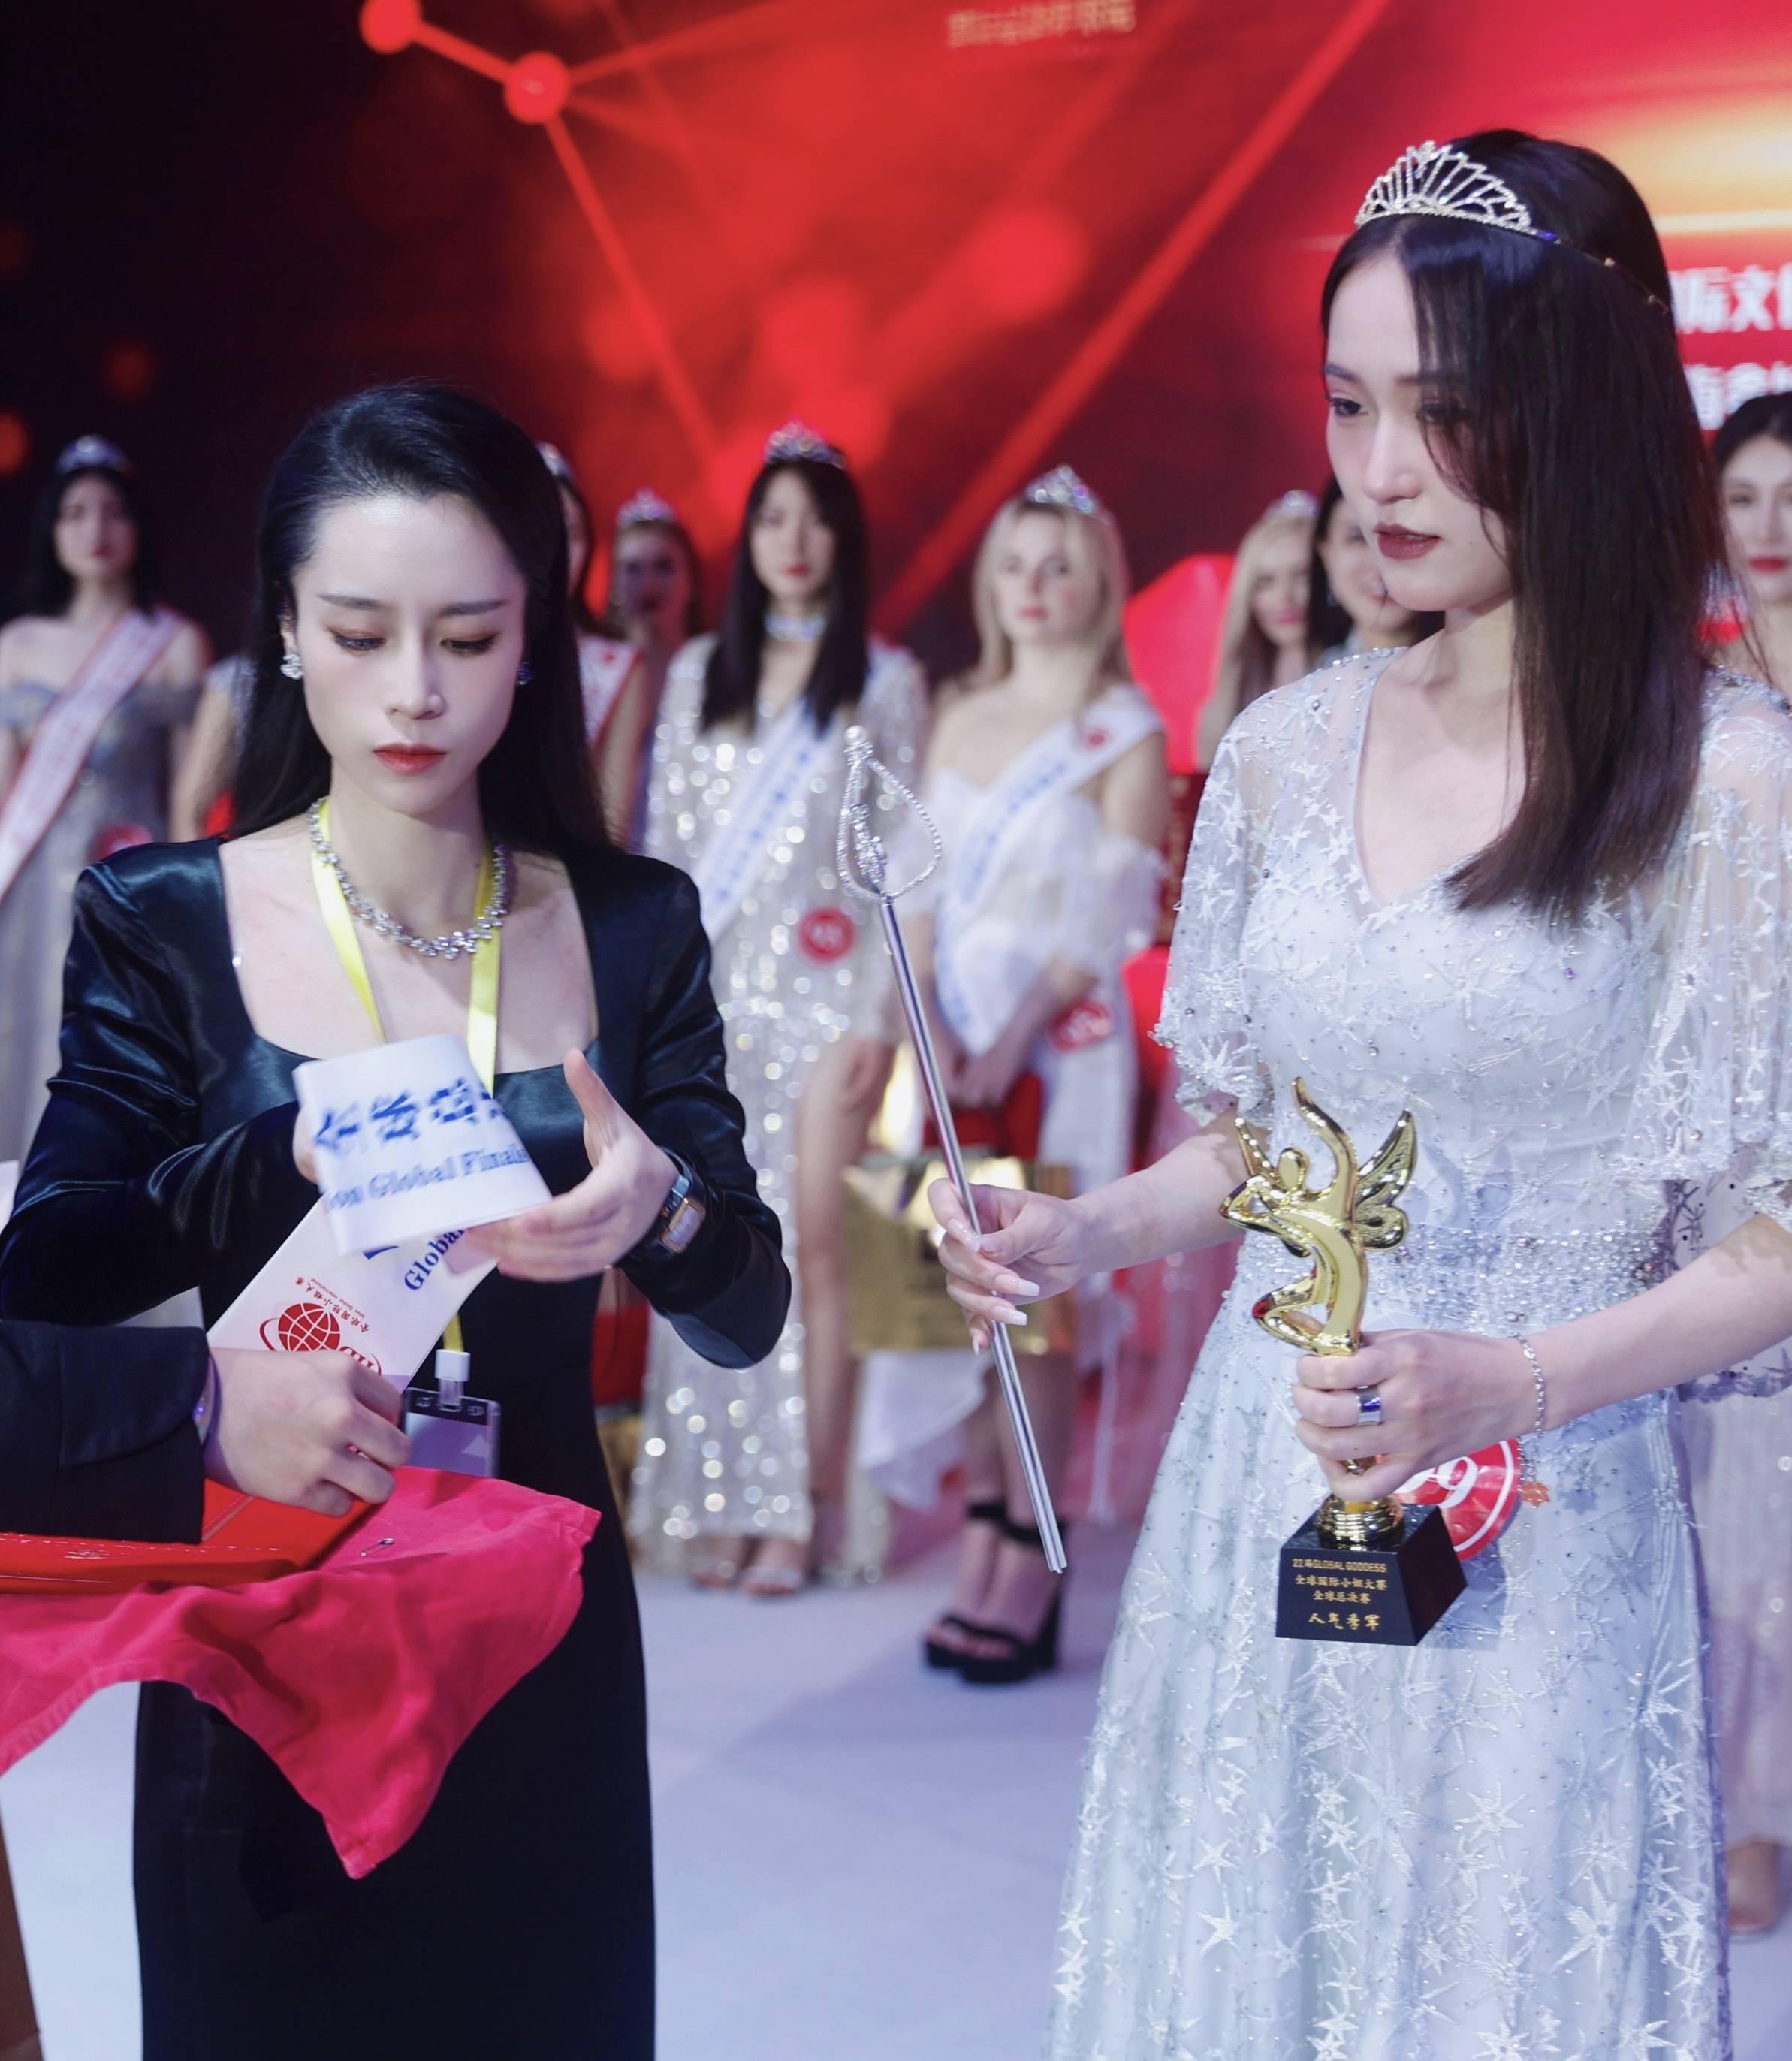 22届global goddess全球国际小姐大赛全球总决赛威尼斯隆重举行